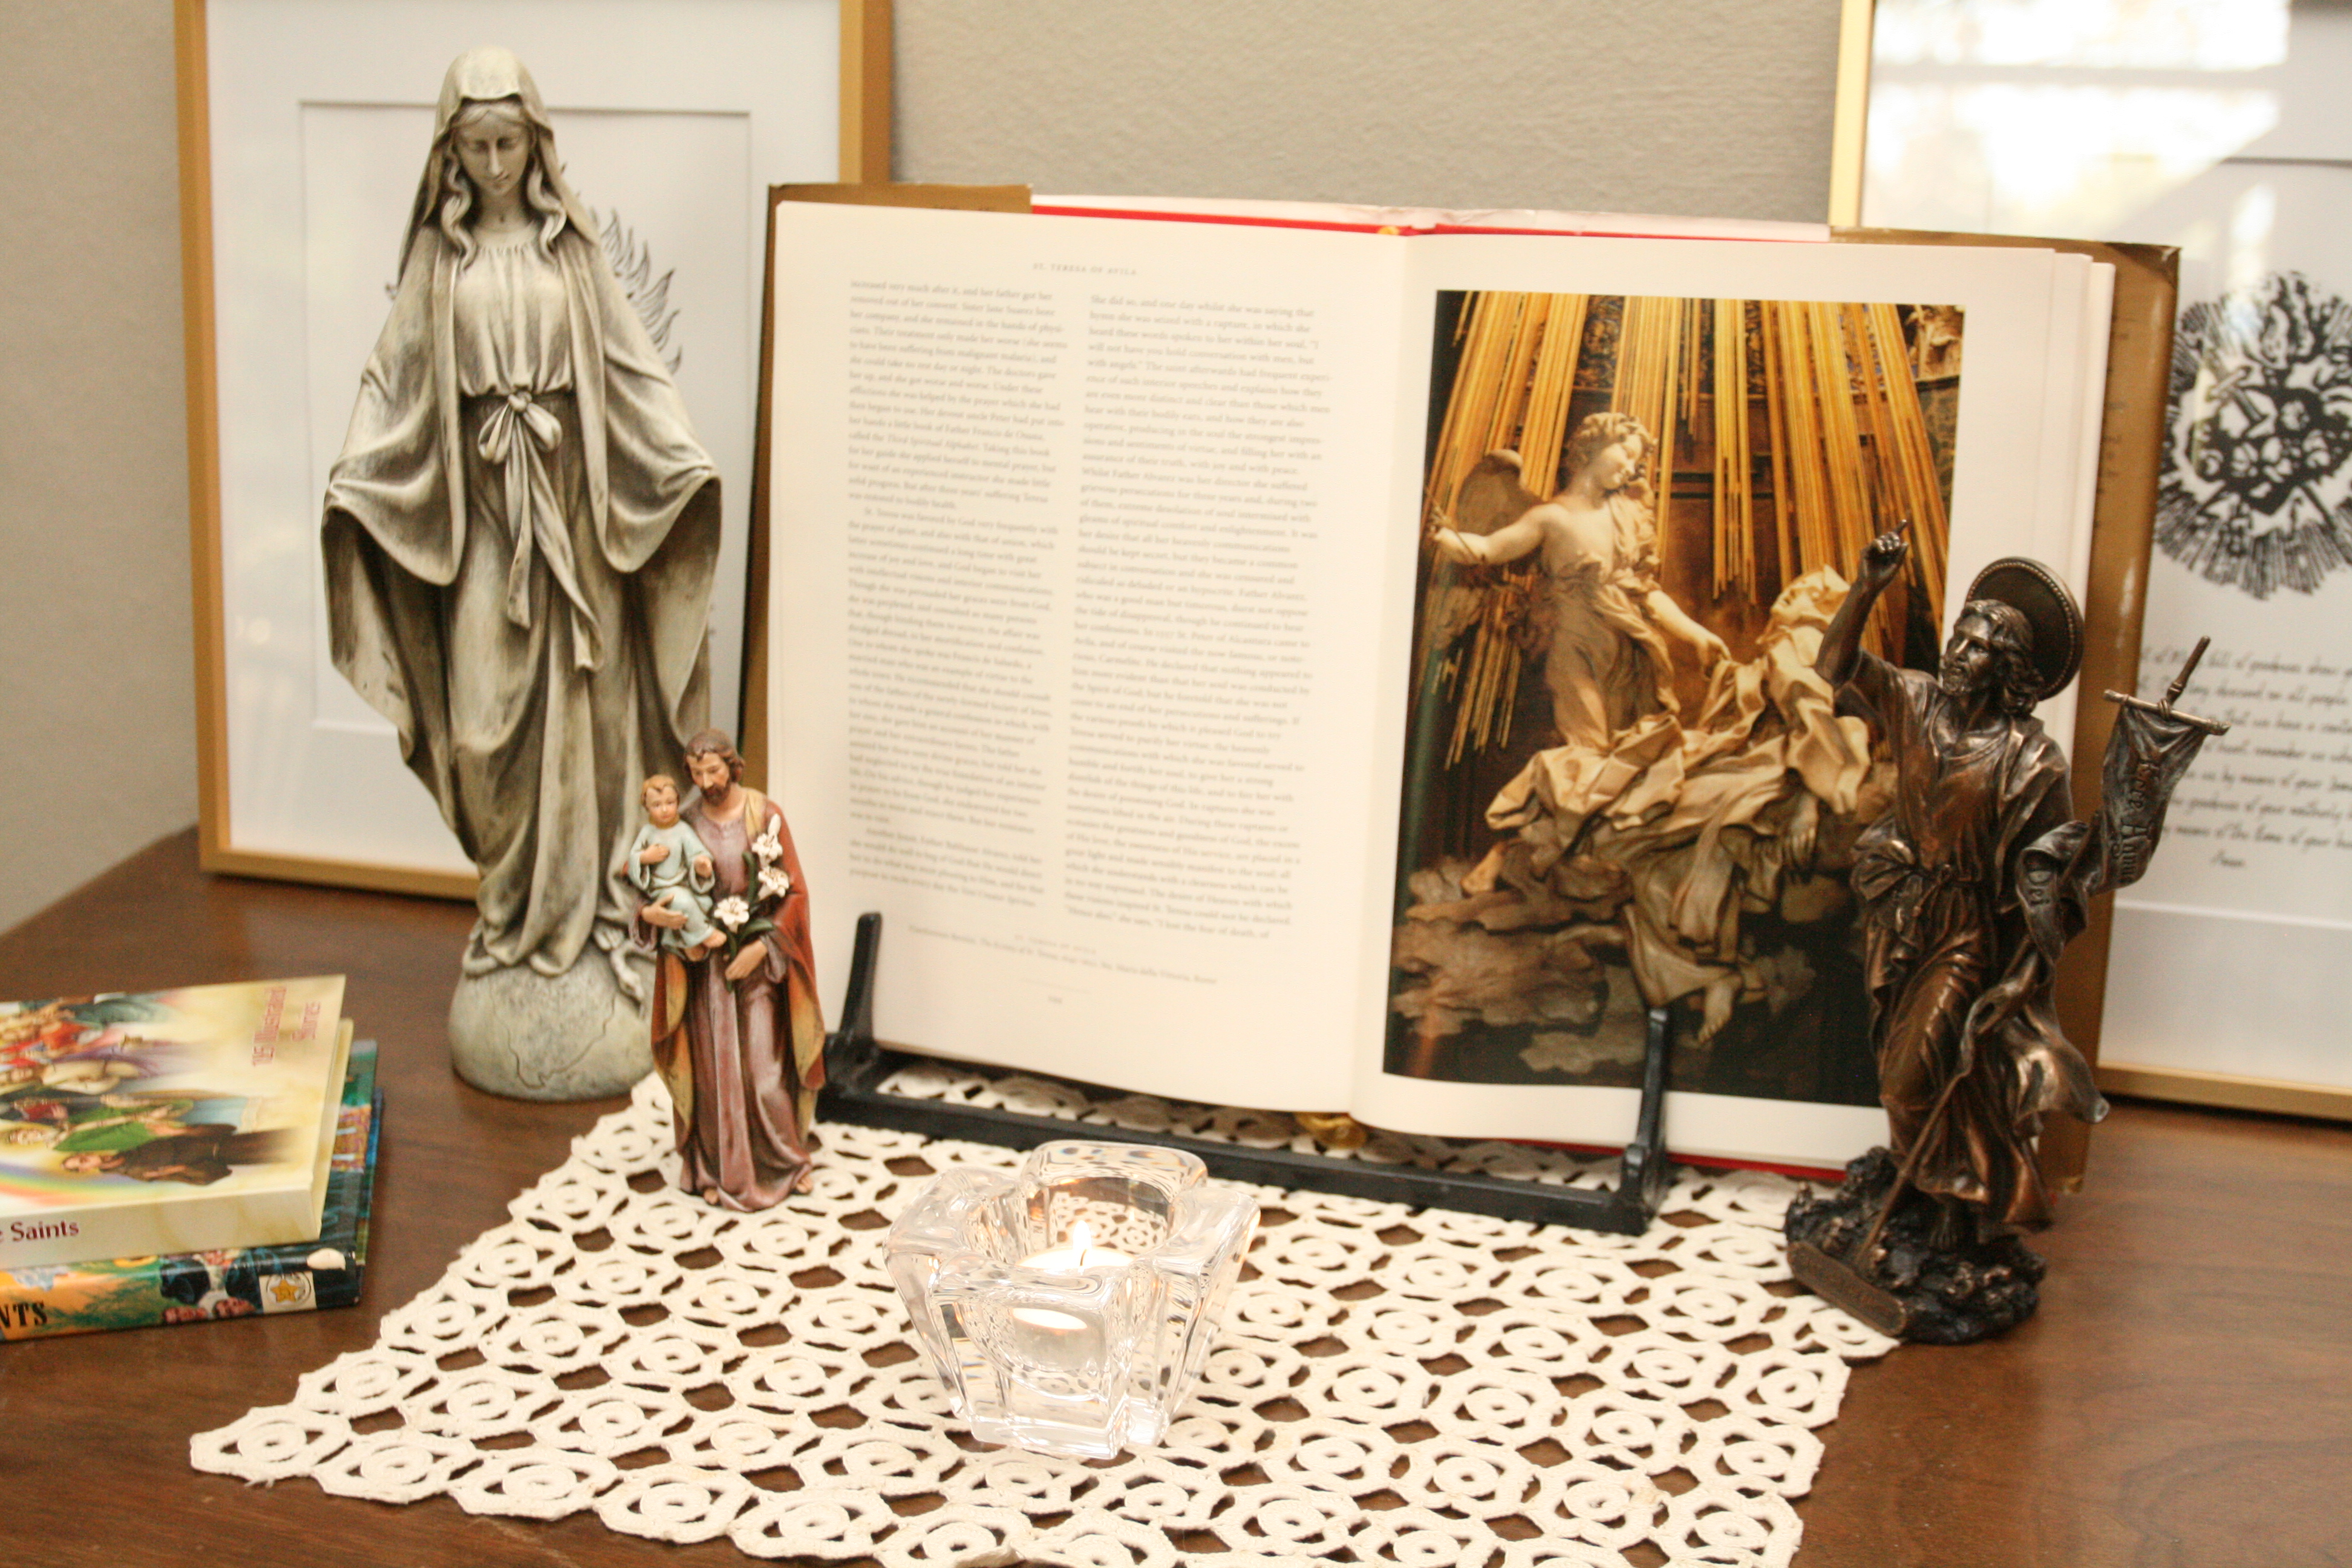 St. Teresa of Avila Feast Day in the Catholic Home